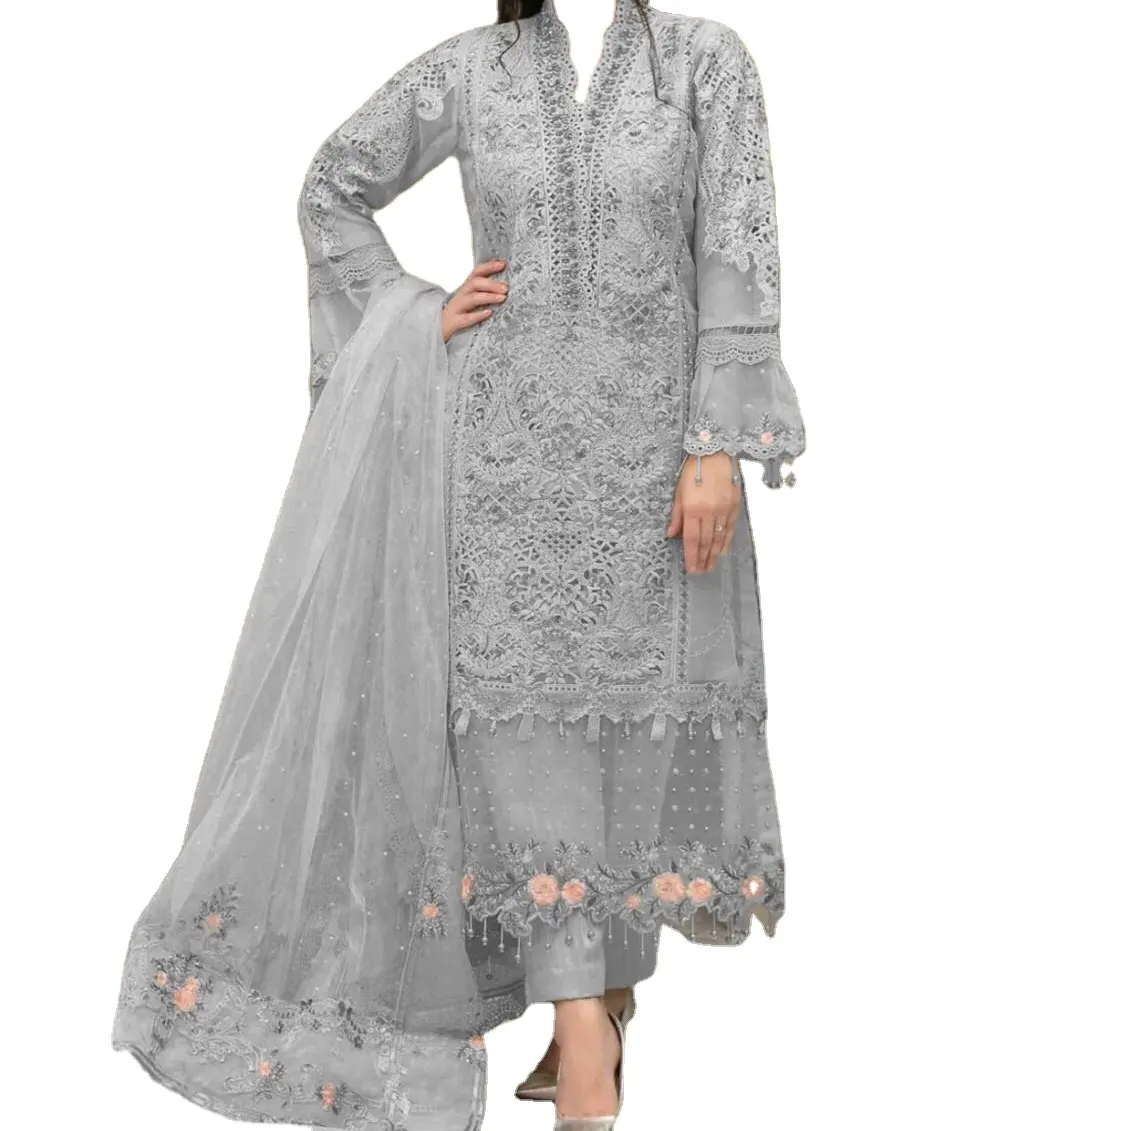 Fantasia stile indiano lehnga choli shalwar kameez e abiti da donna di alta qualità